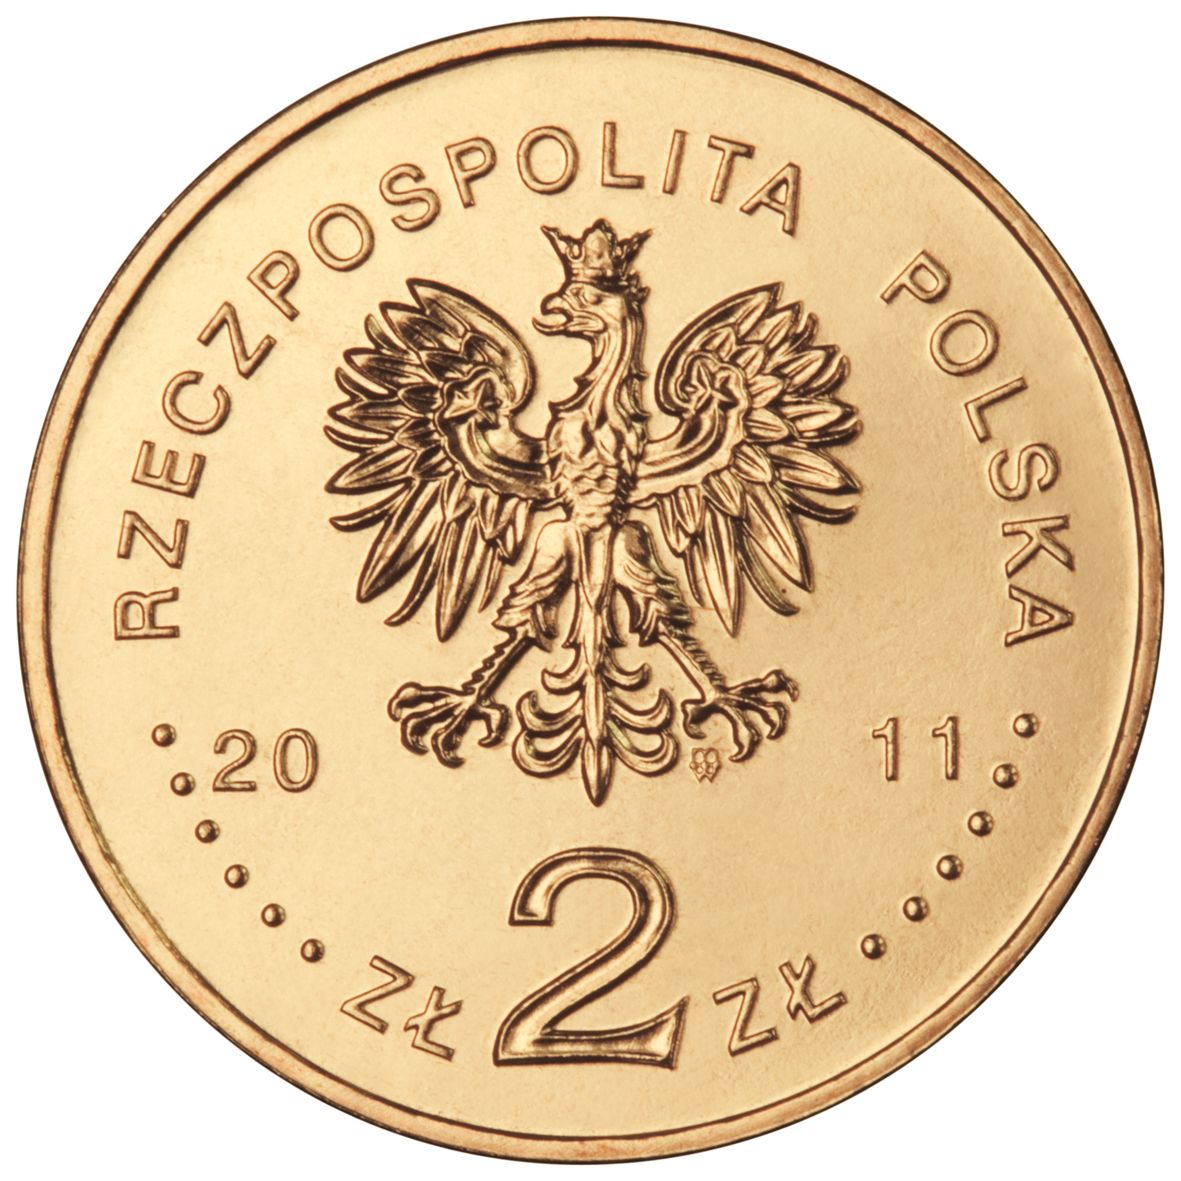 2zl-krakow-awers-monety